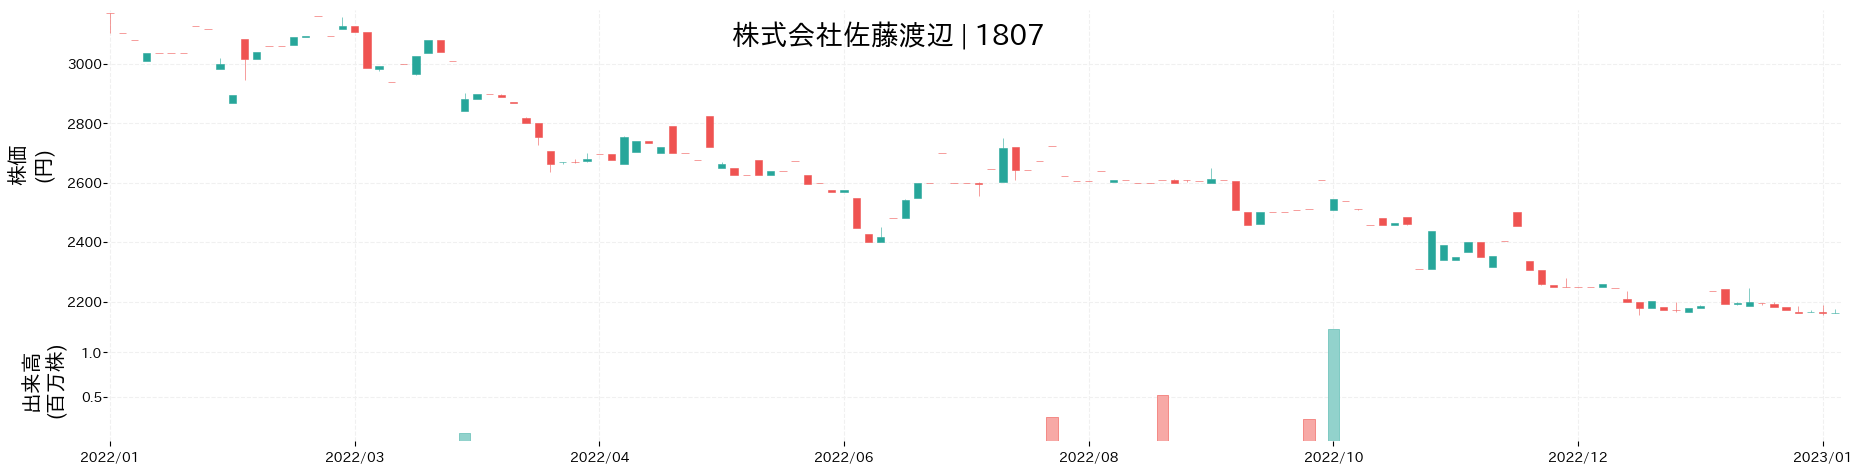 佐藤渡辺の株価推移(2022)